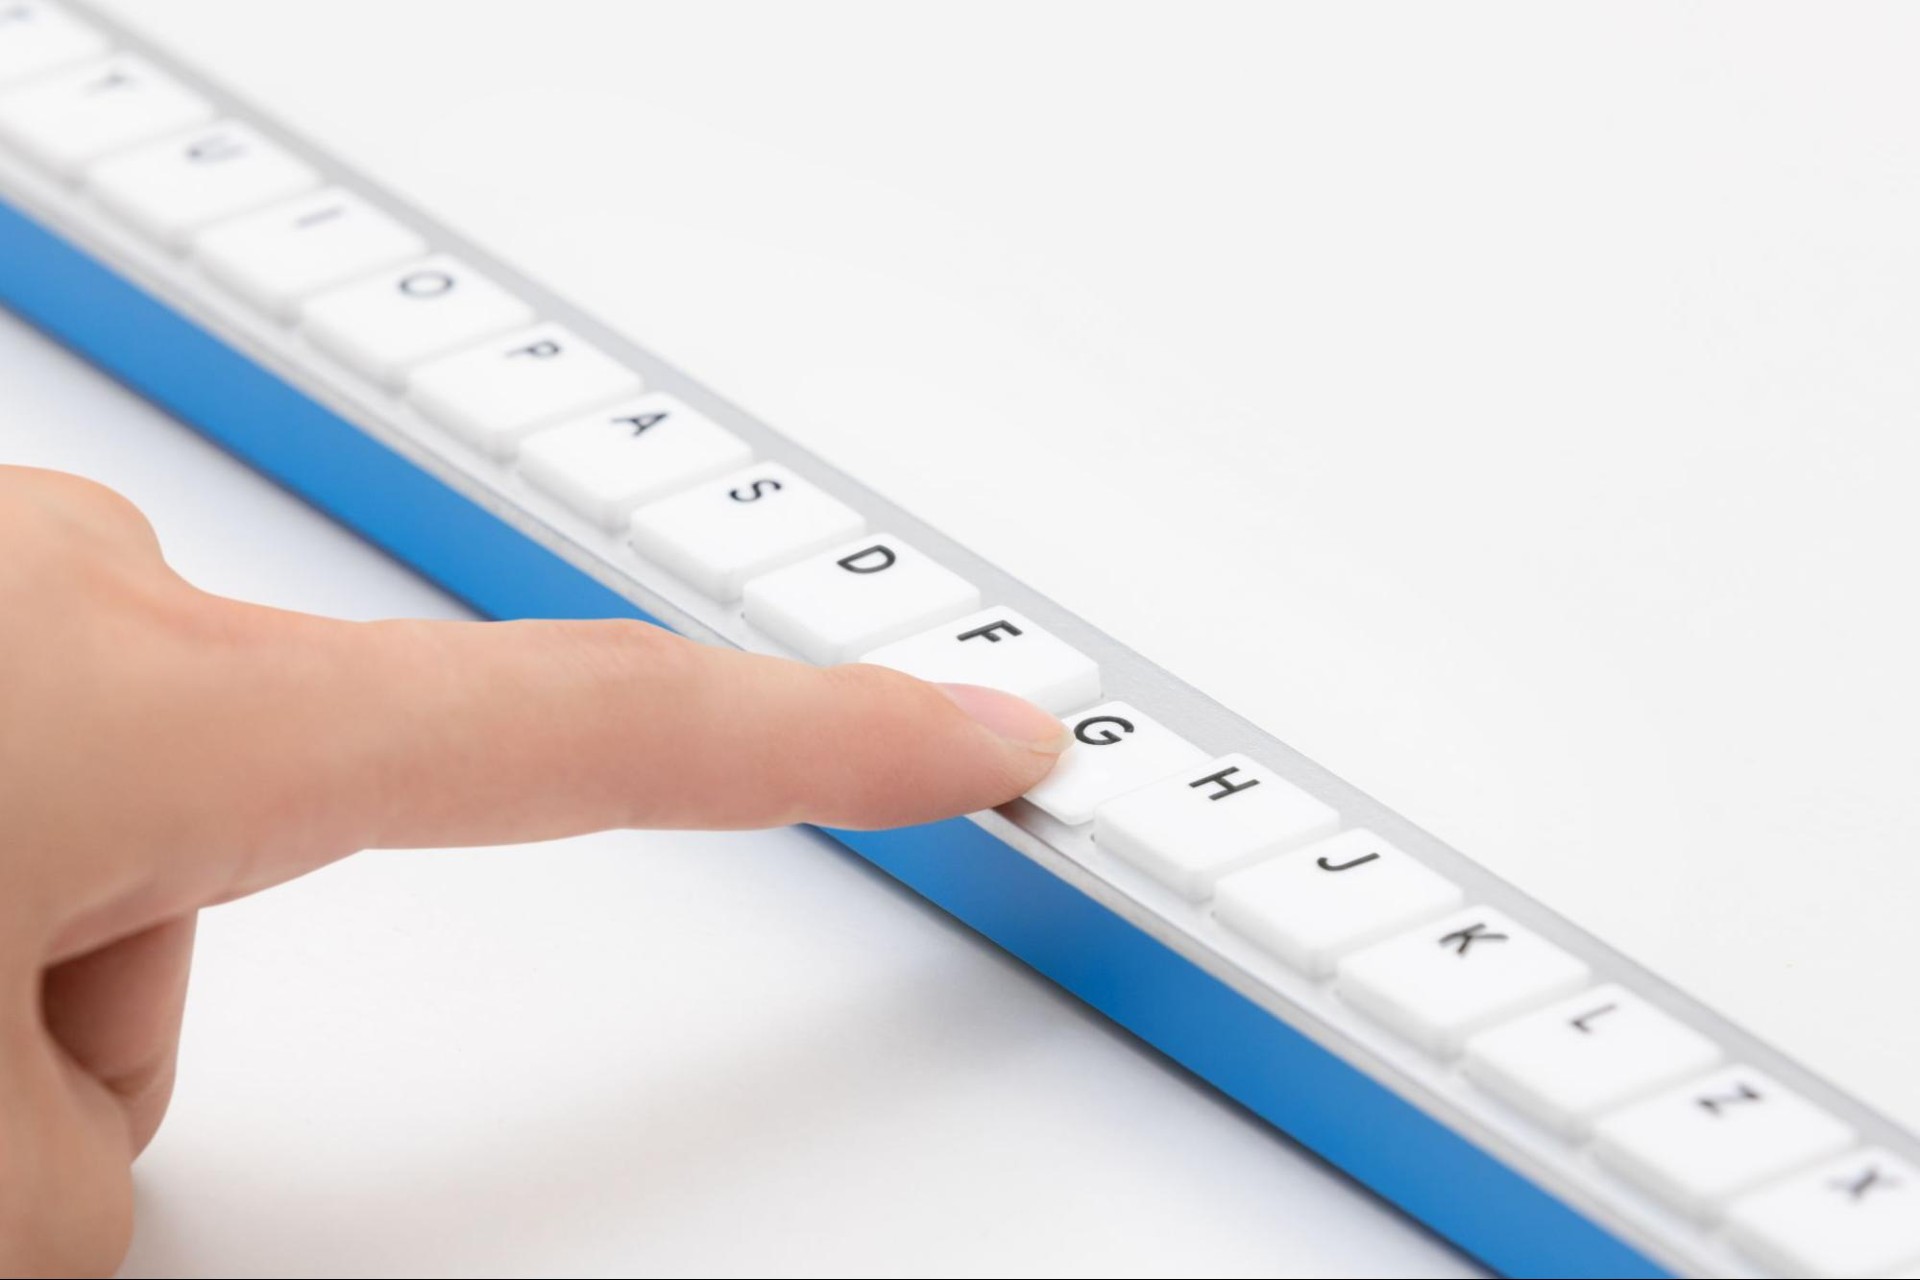 Google ญี่ปุ่น เสนอการพิมพ์แบบใหม่ Gboard Stick คีย์บอร์ดแบบแถวยาววววว